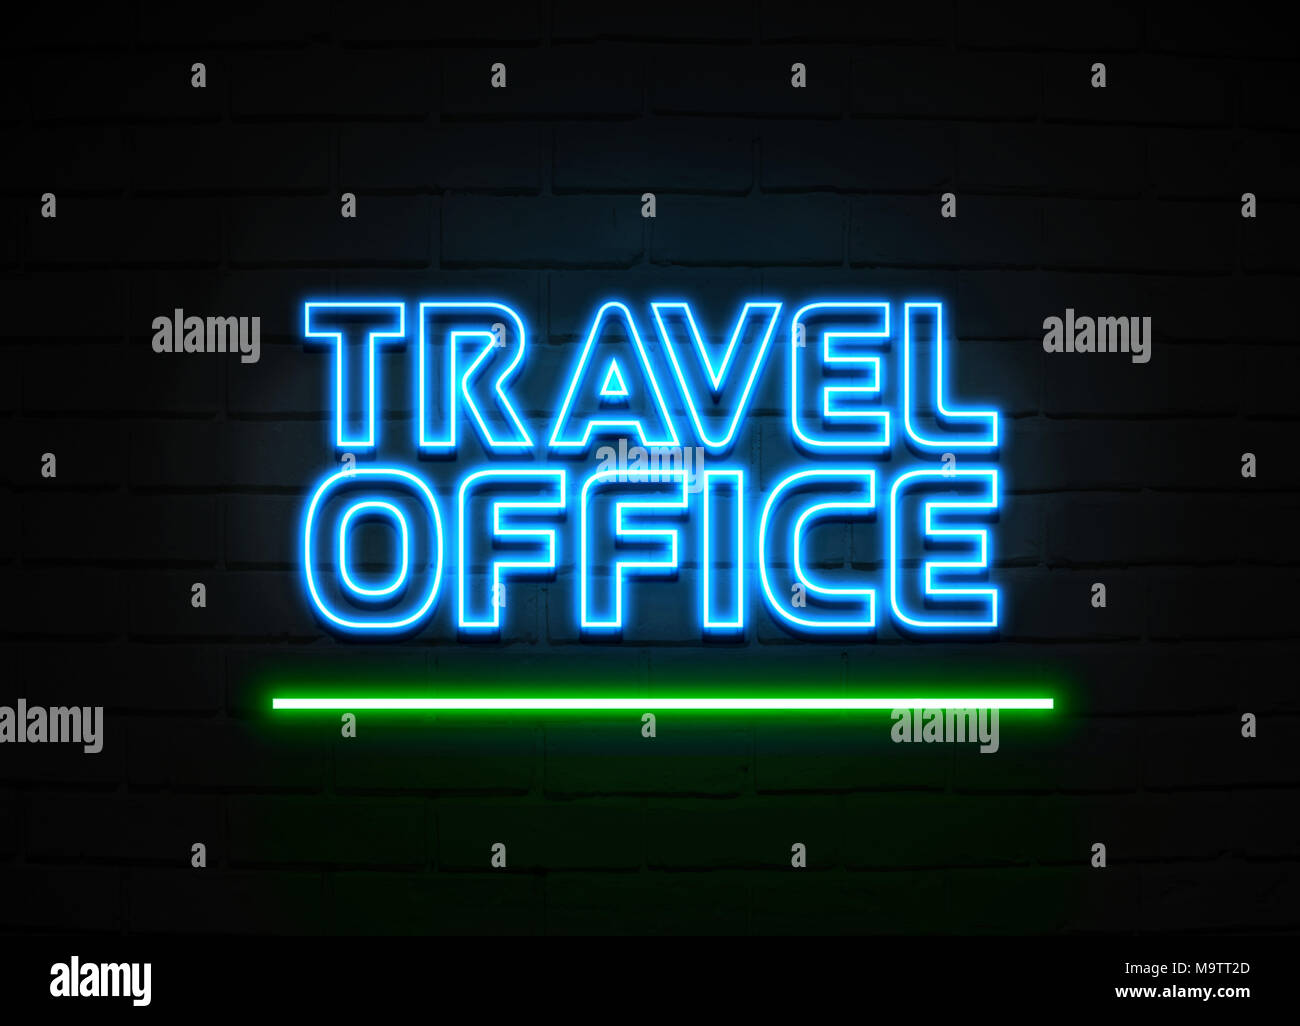 Bureau de voyage en néon - Glowing Neon Sign sur mur brickwall - rendu 3D illustration libres de droits. Banque D'Images